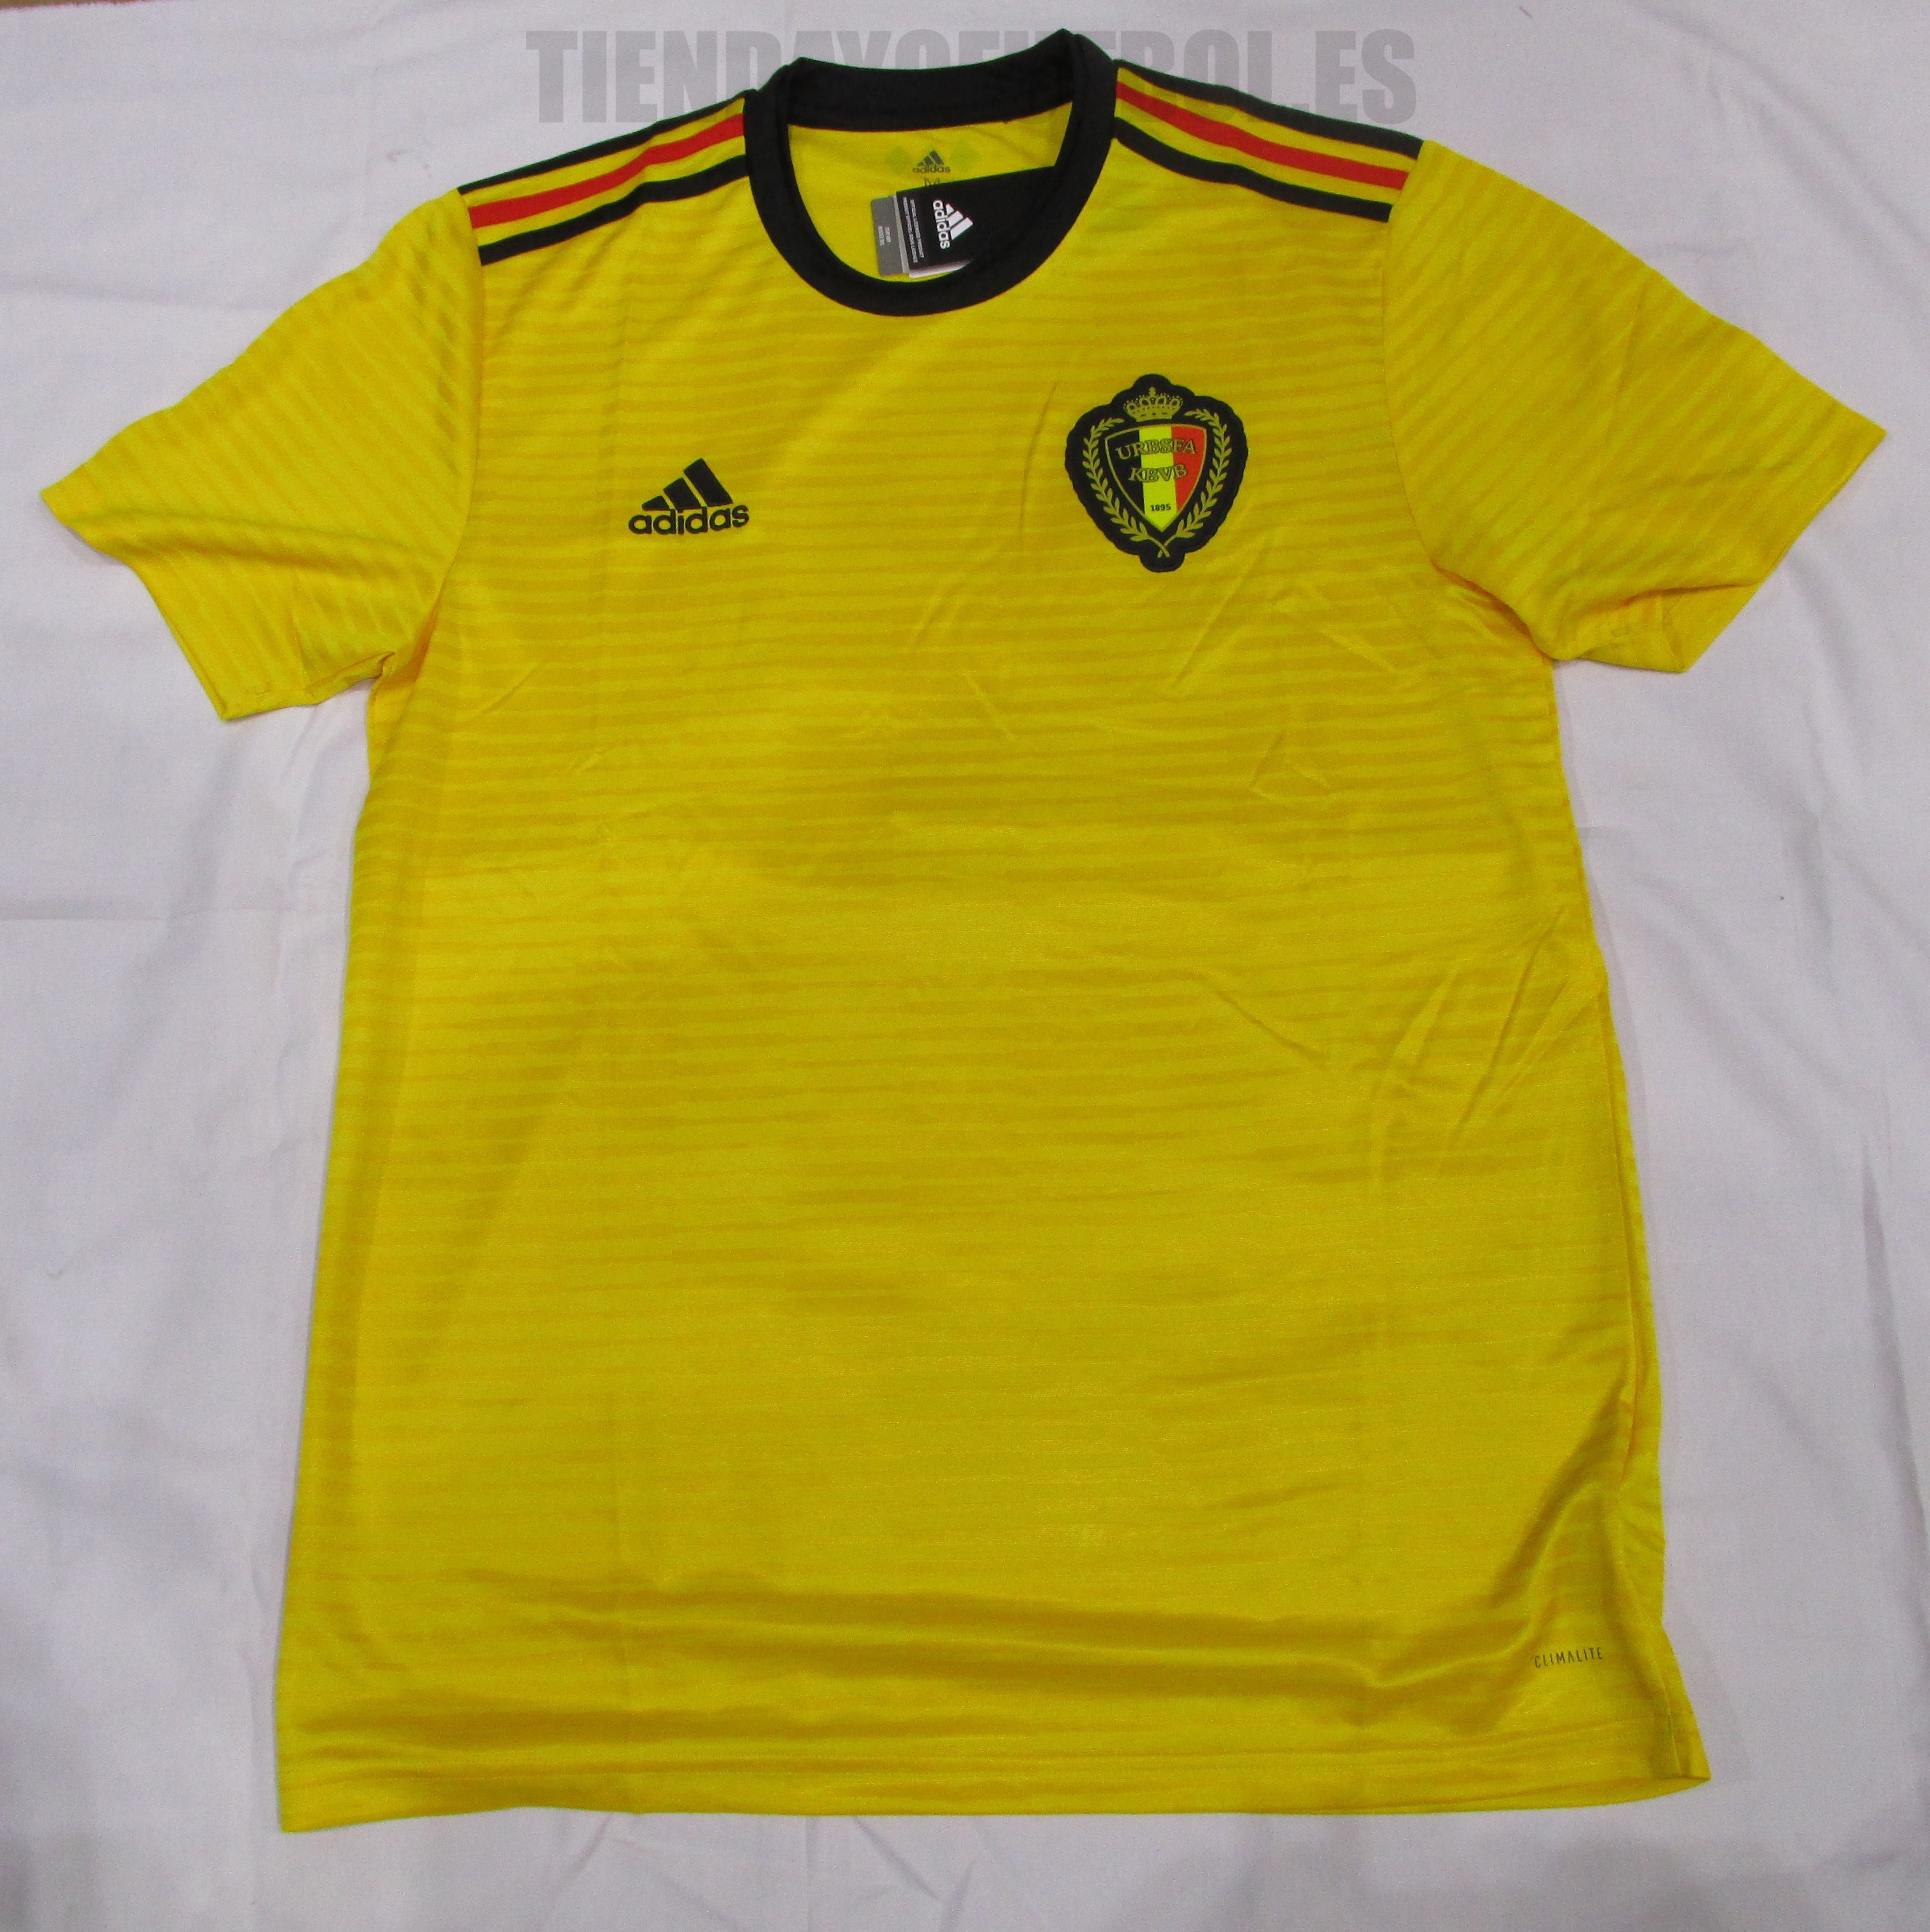 Belgica su Camiseta mundial 2018 camiseta oficial belgica | Belga camiseta mundial 2018